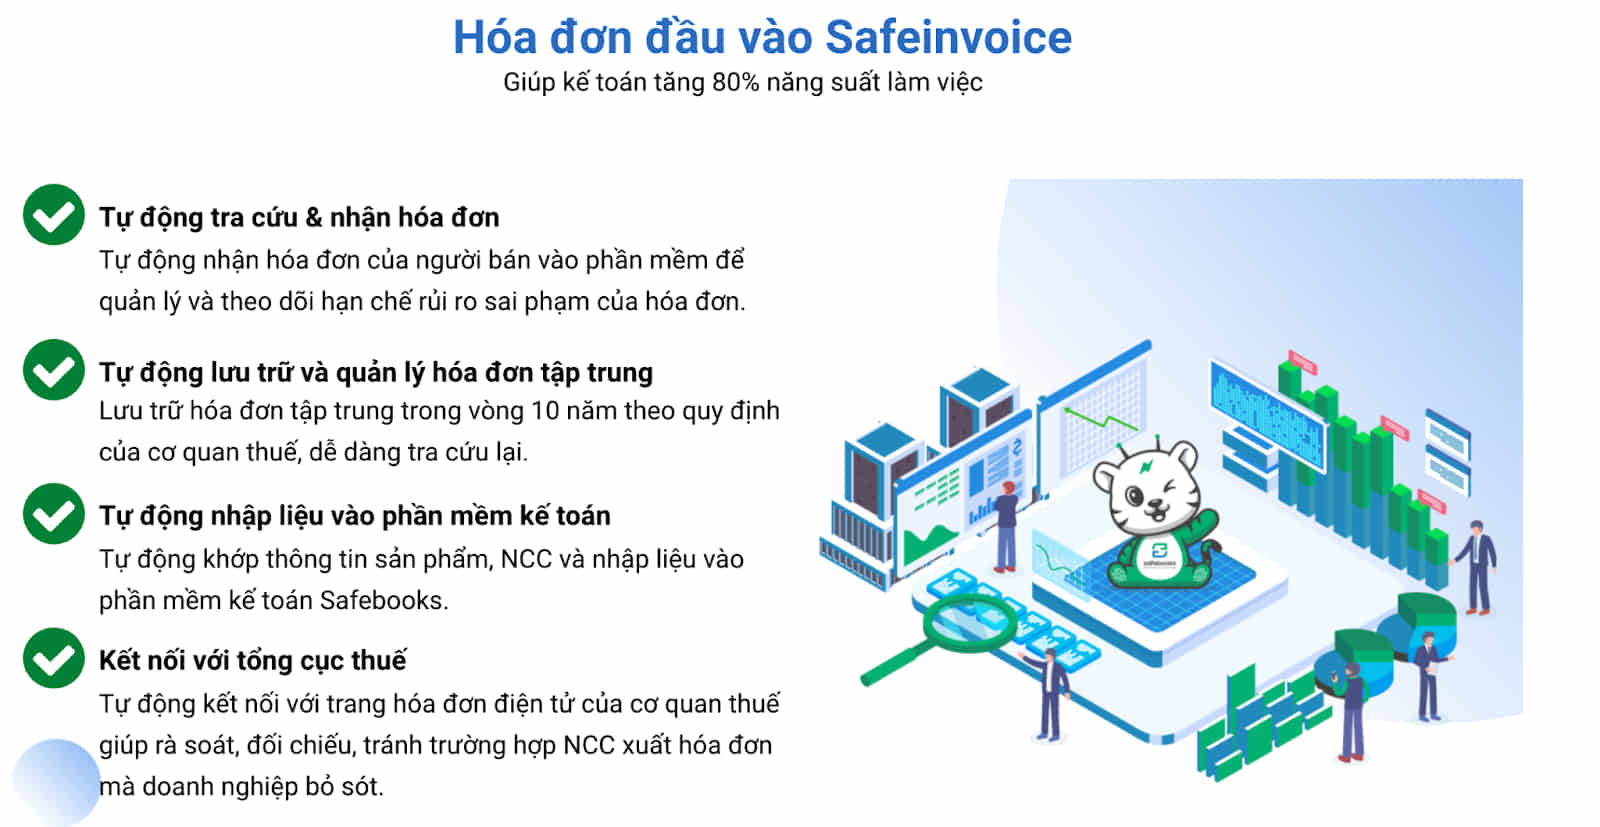 Lợi ích của phần mềm hóa đơn đầu vào Safeinvoice